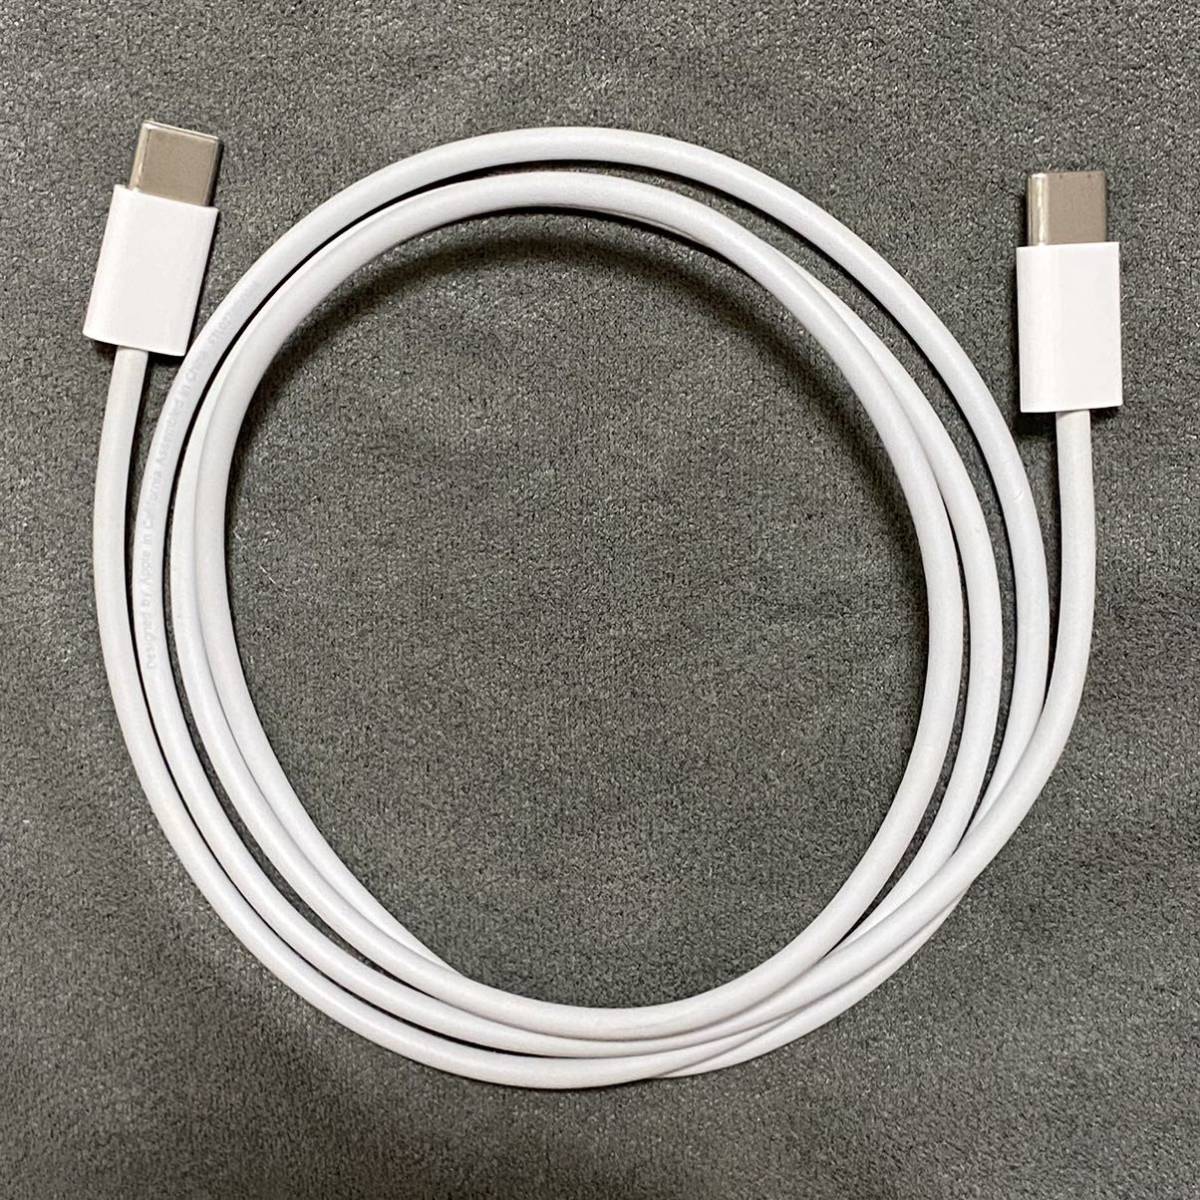 Apple оригинальный товар USB-C зарядка кабель 1m A1997 iPad принадлежности USB-C to USB-C MM093FE/A MUF72FE/A type-C бесплатная доставка включая доставку 